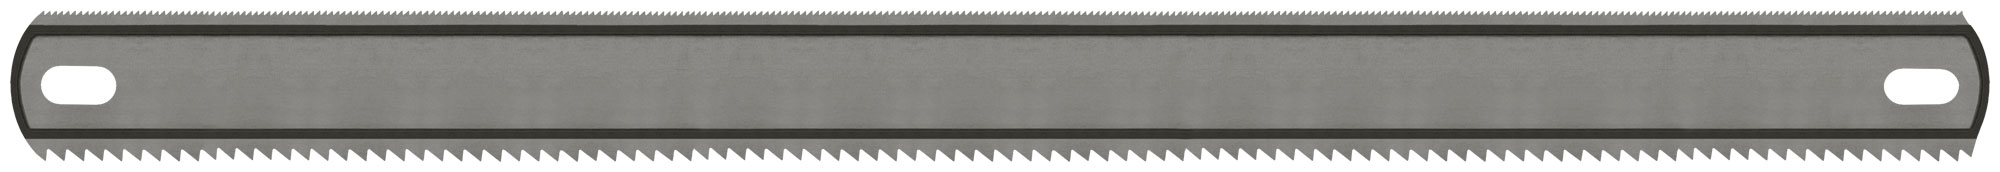 П_А_К КУРС  Полотно ножовочное металл/дерево ( 24 TPI / 8 TPI ), каленый зуб, широкое двус